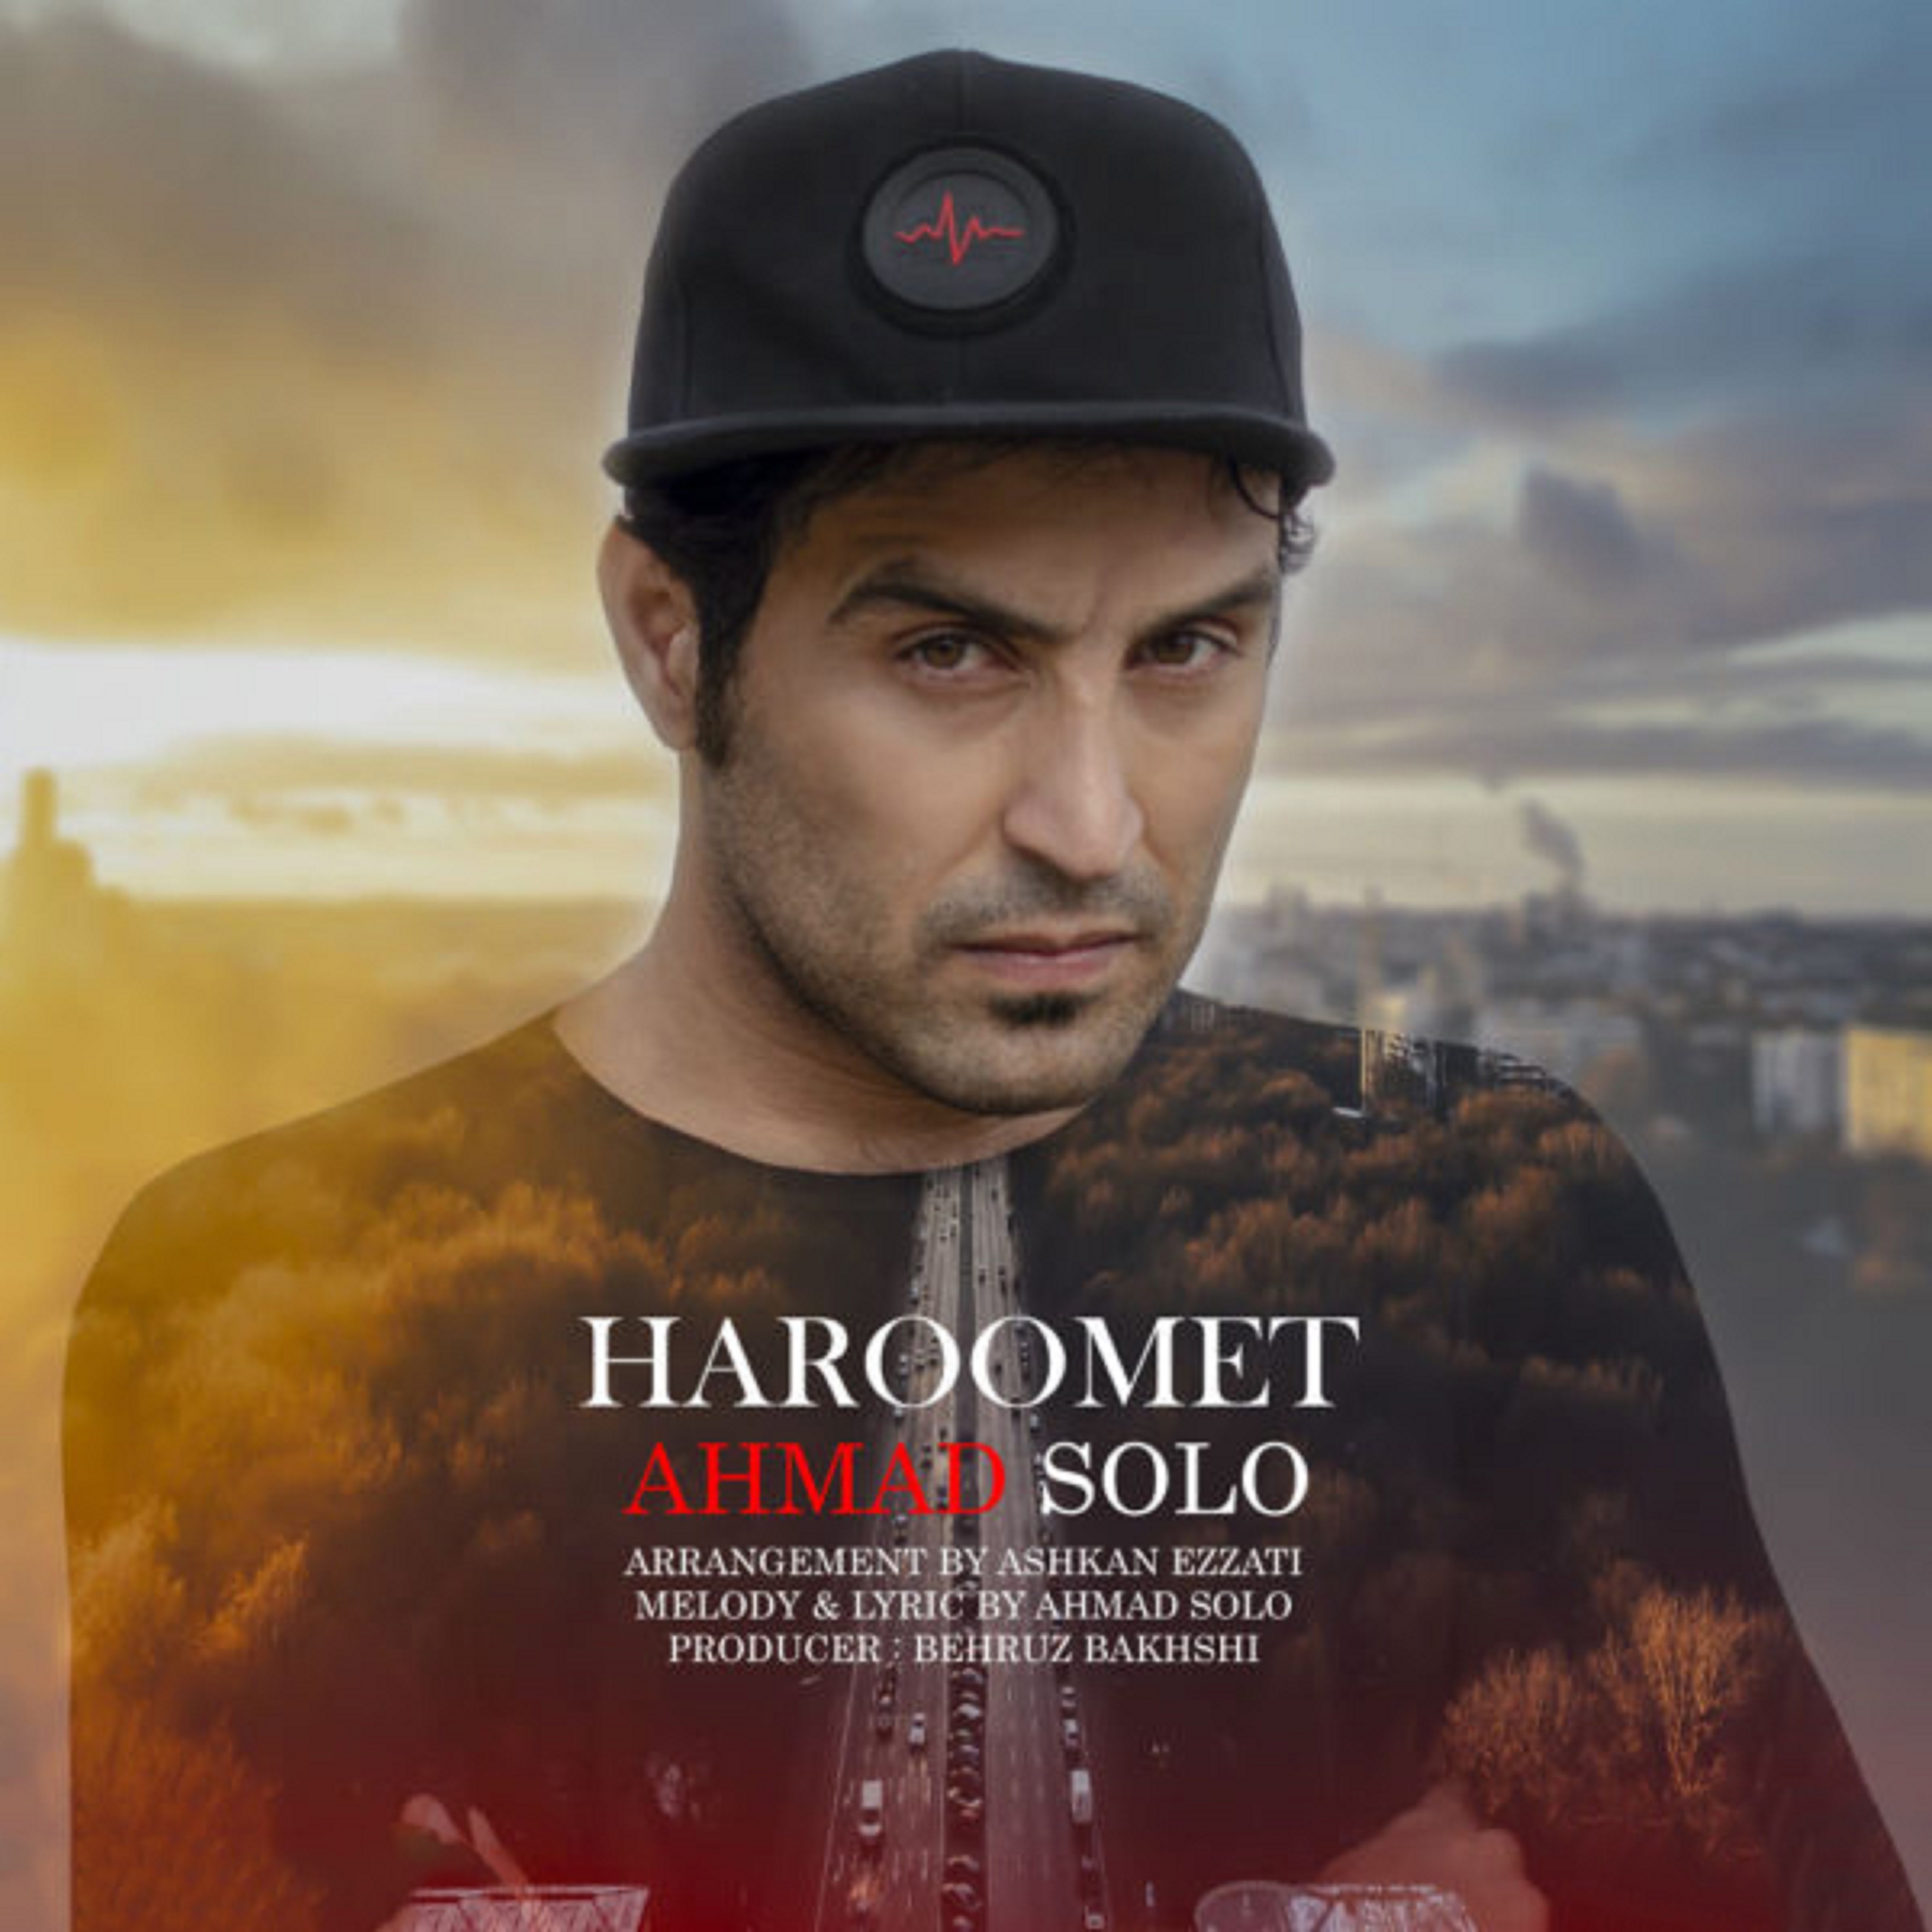  دانلود آهنگ جدید احمد سولو - حرومت | Download New Music By Ahmad Solo - Haroomet